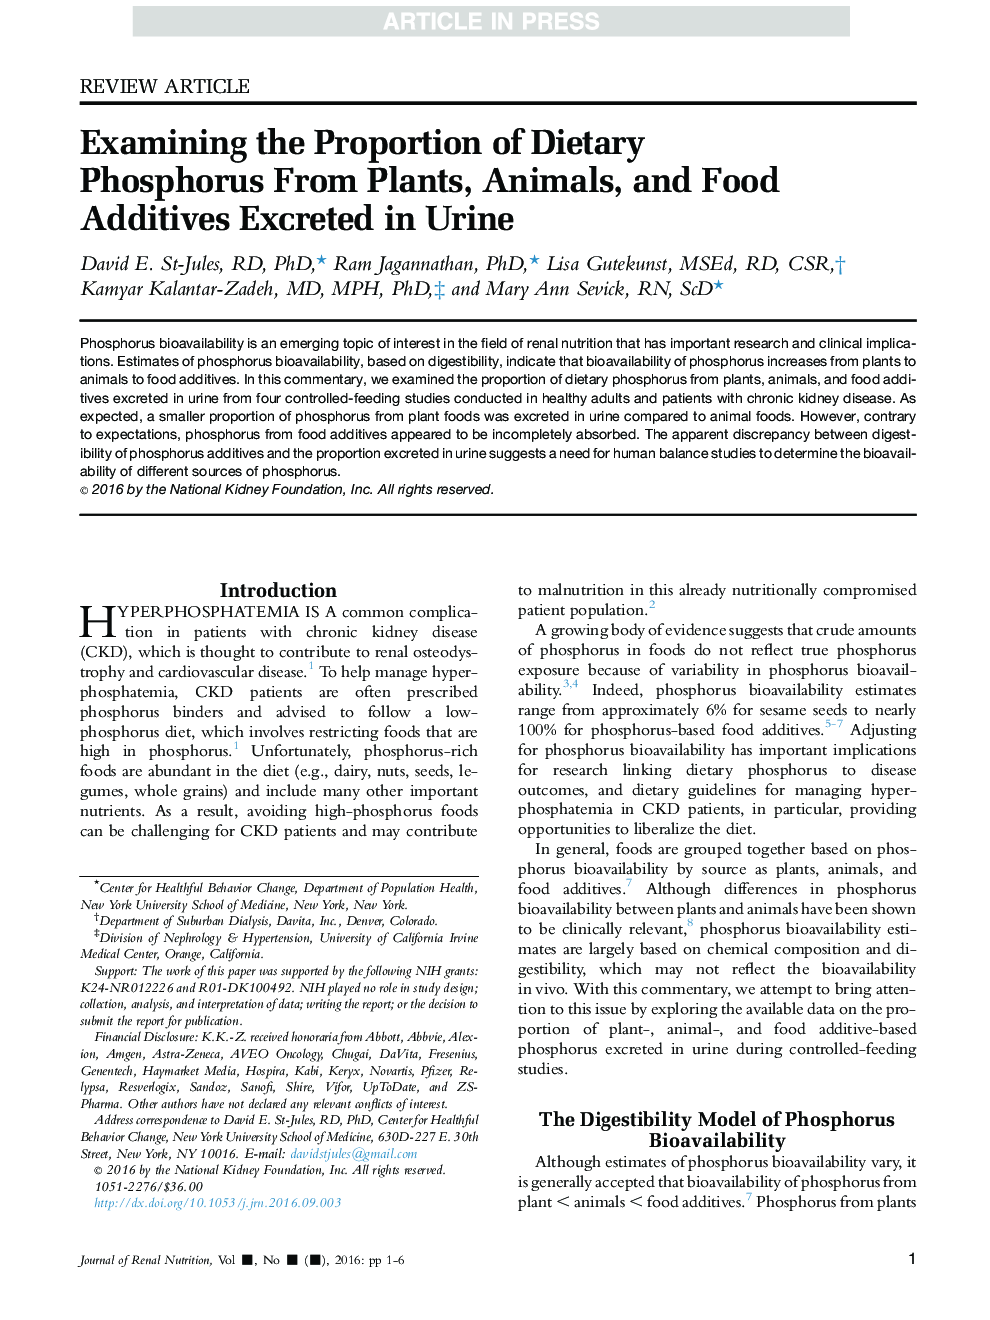 بررسی پروتئین فسفر رژیمی از گیاهان، حیوانات و مکمل های غذایی که در ادرار دفع می شود 